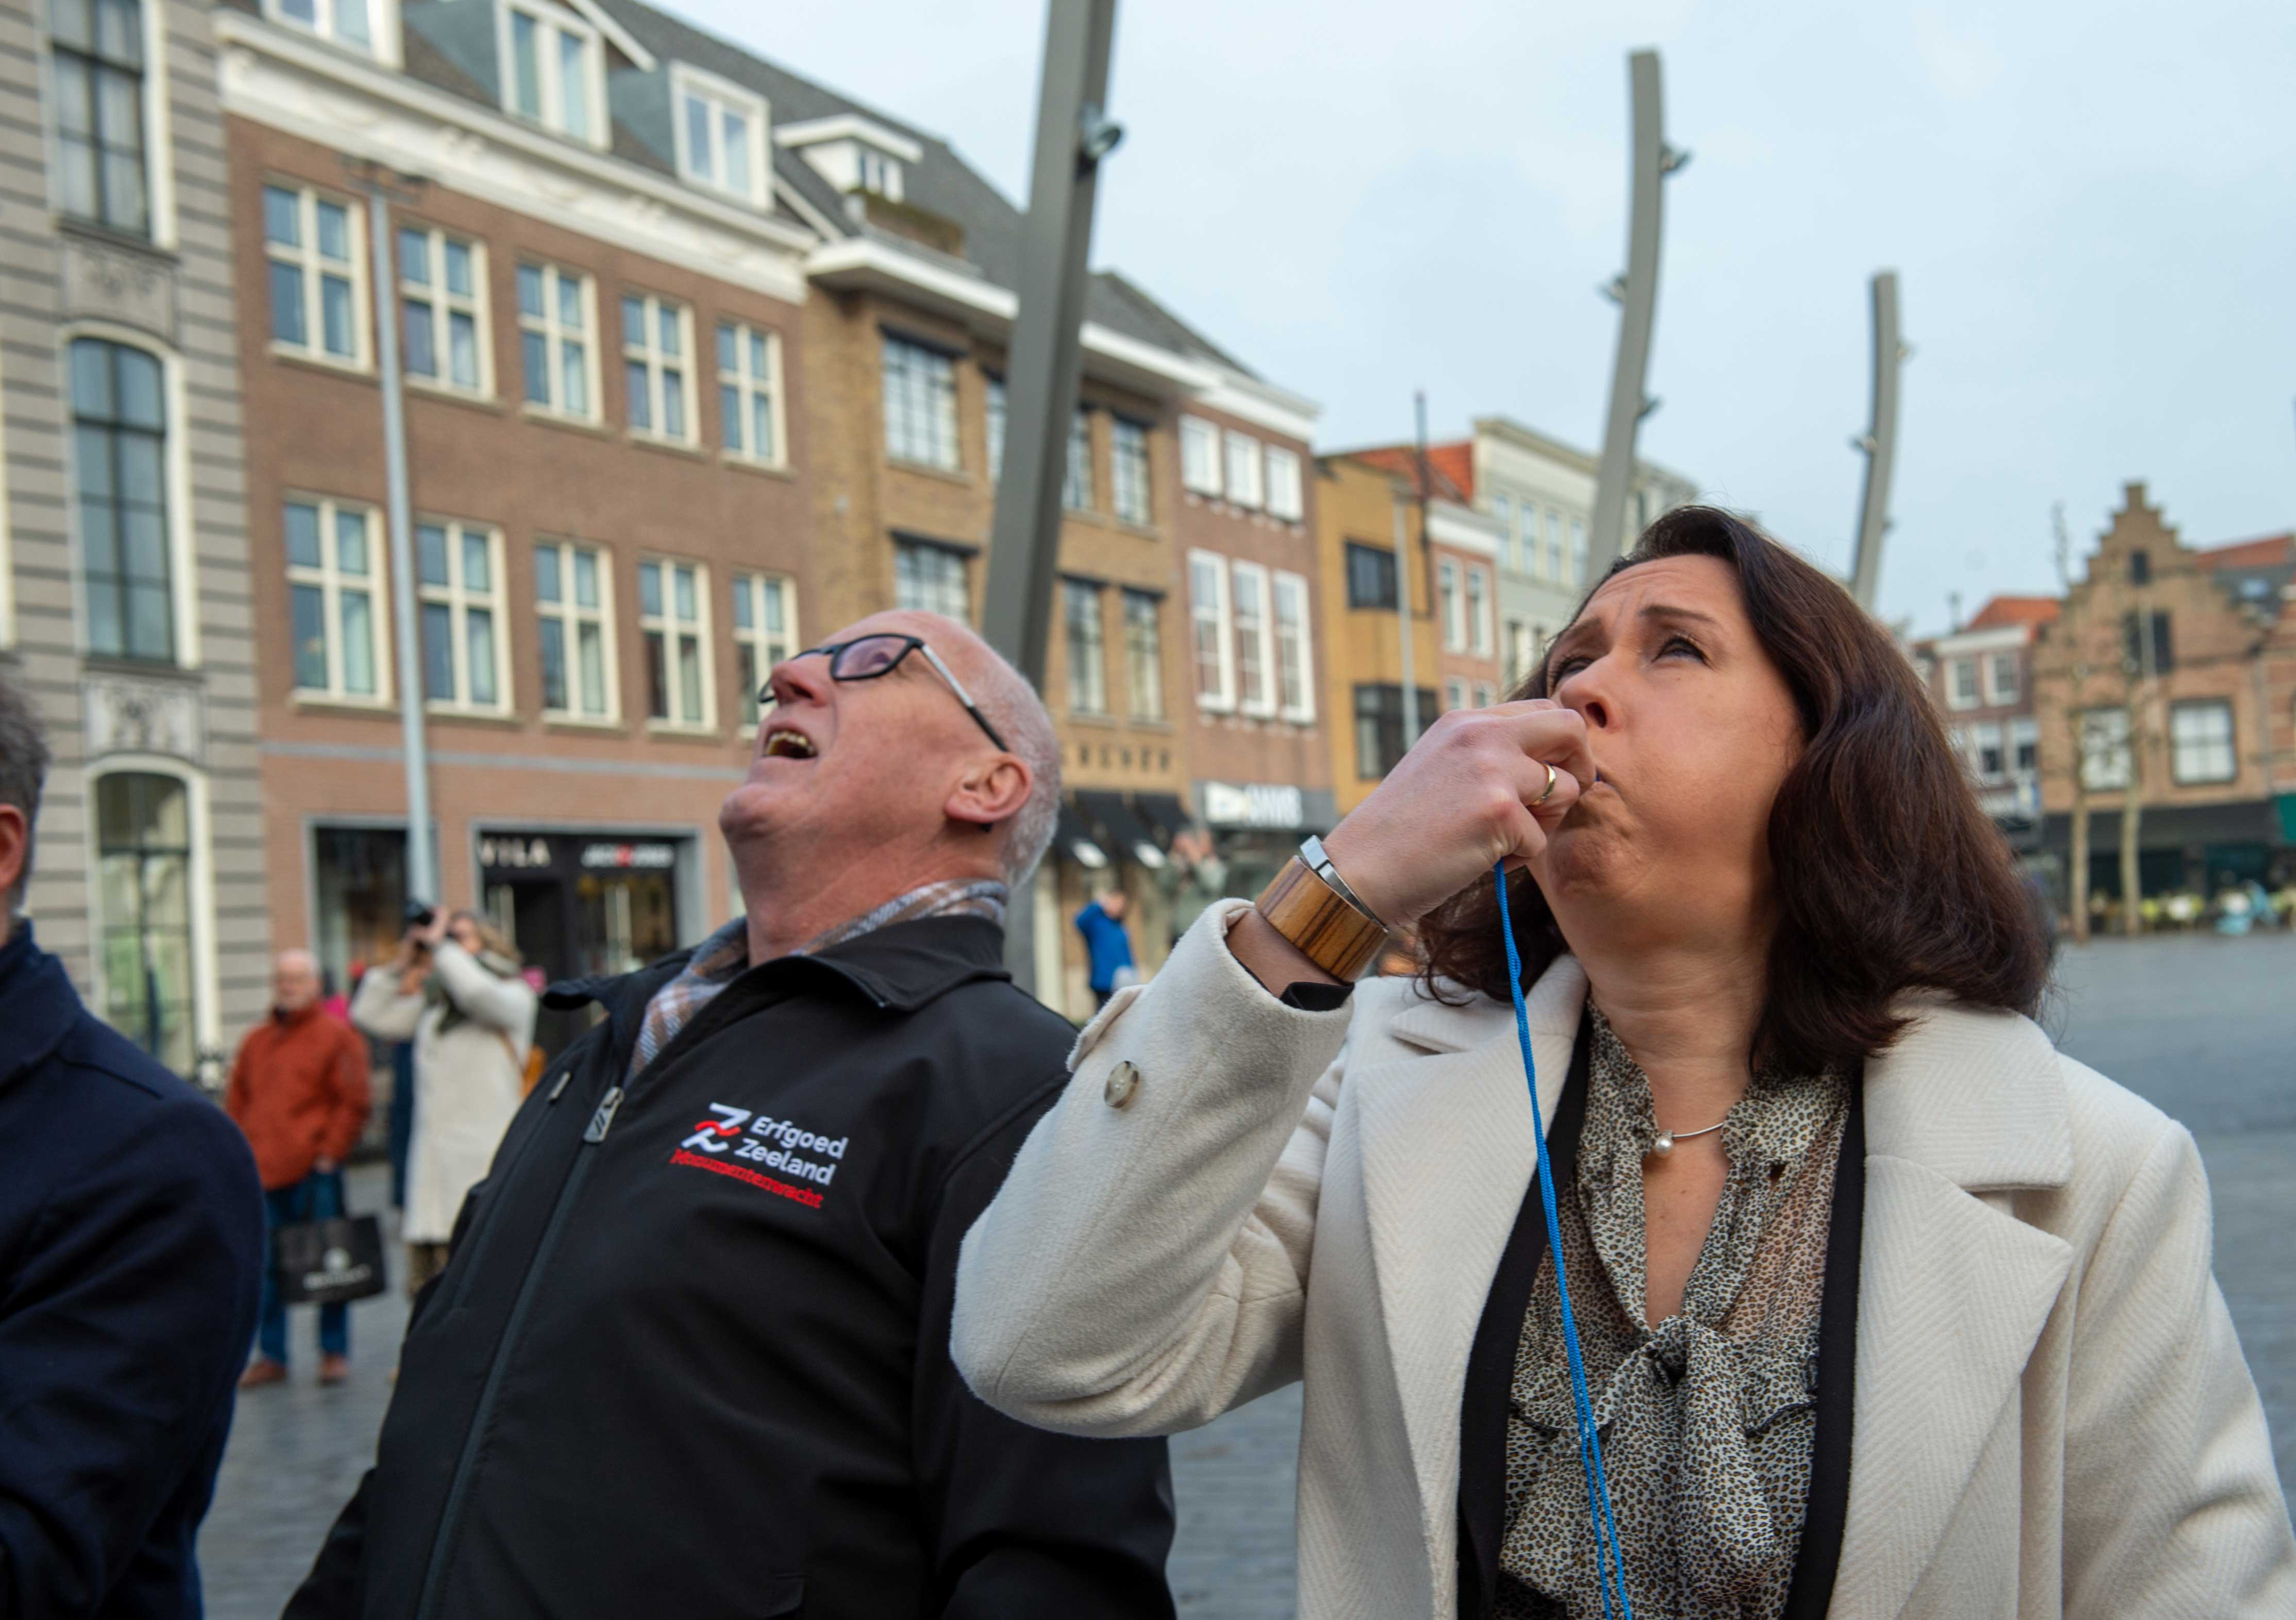 Cultuurgedeputeerde Anita Pijpelink geeft op een fluitje het startsein voor het uitrollen van de banner, met naast haar teamleider Monumentenwacht Wim Jakobsen.